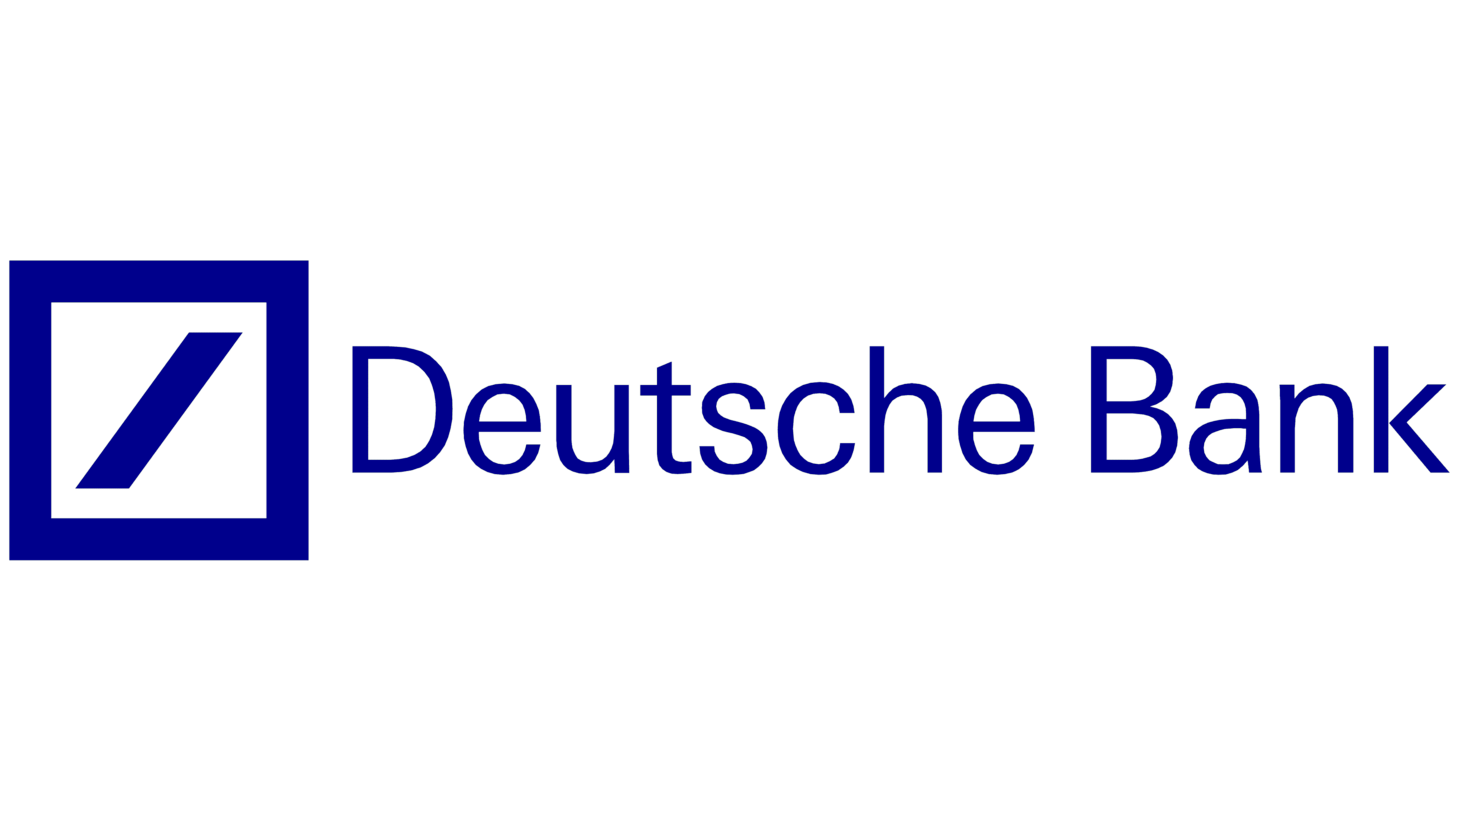 Deutsche bank logo